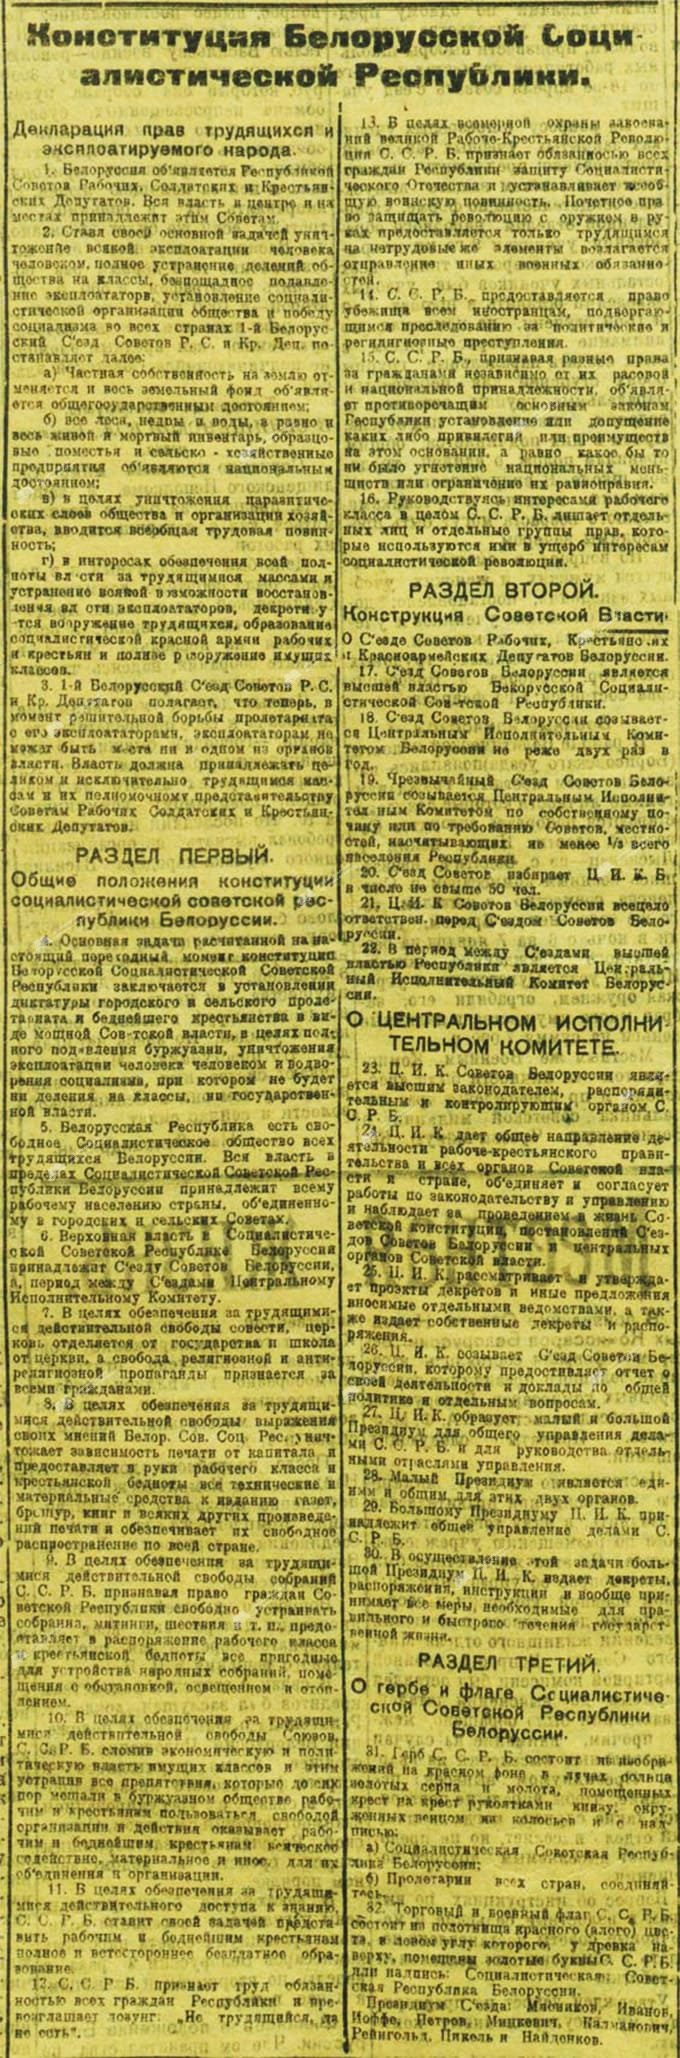 Конституция Белорусской Социалистической Республики (ССРБ) 3 февраля 1919 г.-стр. 0